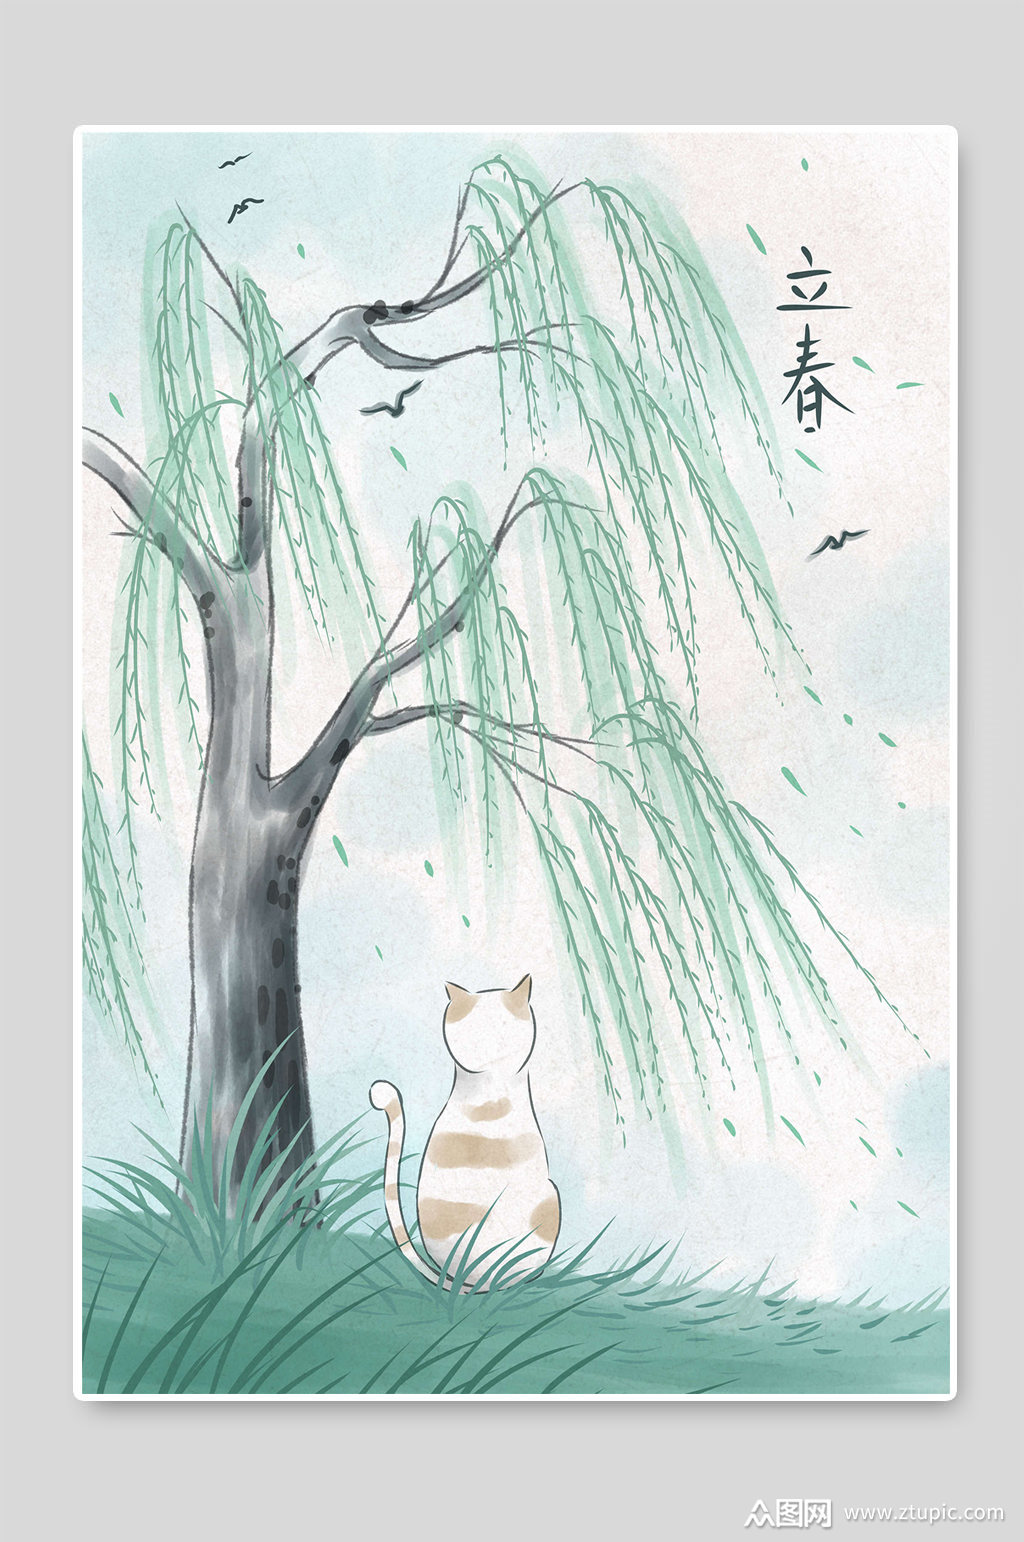 众图网独家提供创意立春24节气柳树手绘插画素材免费下载,本作品是由